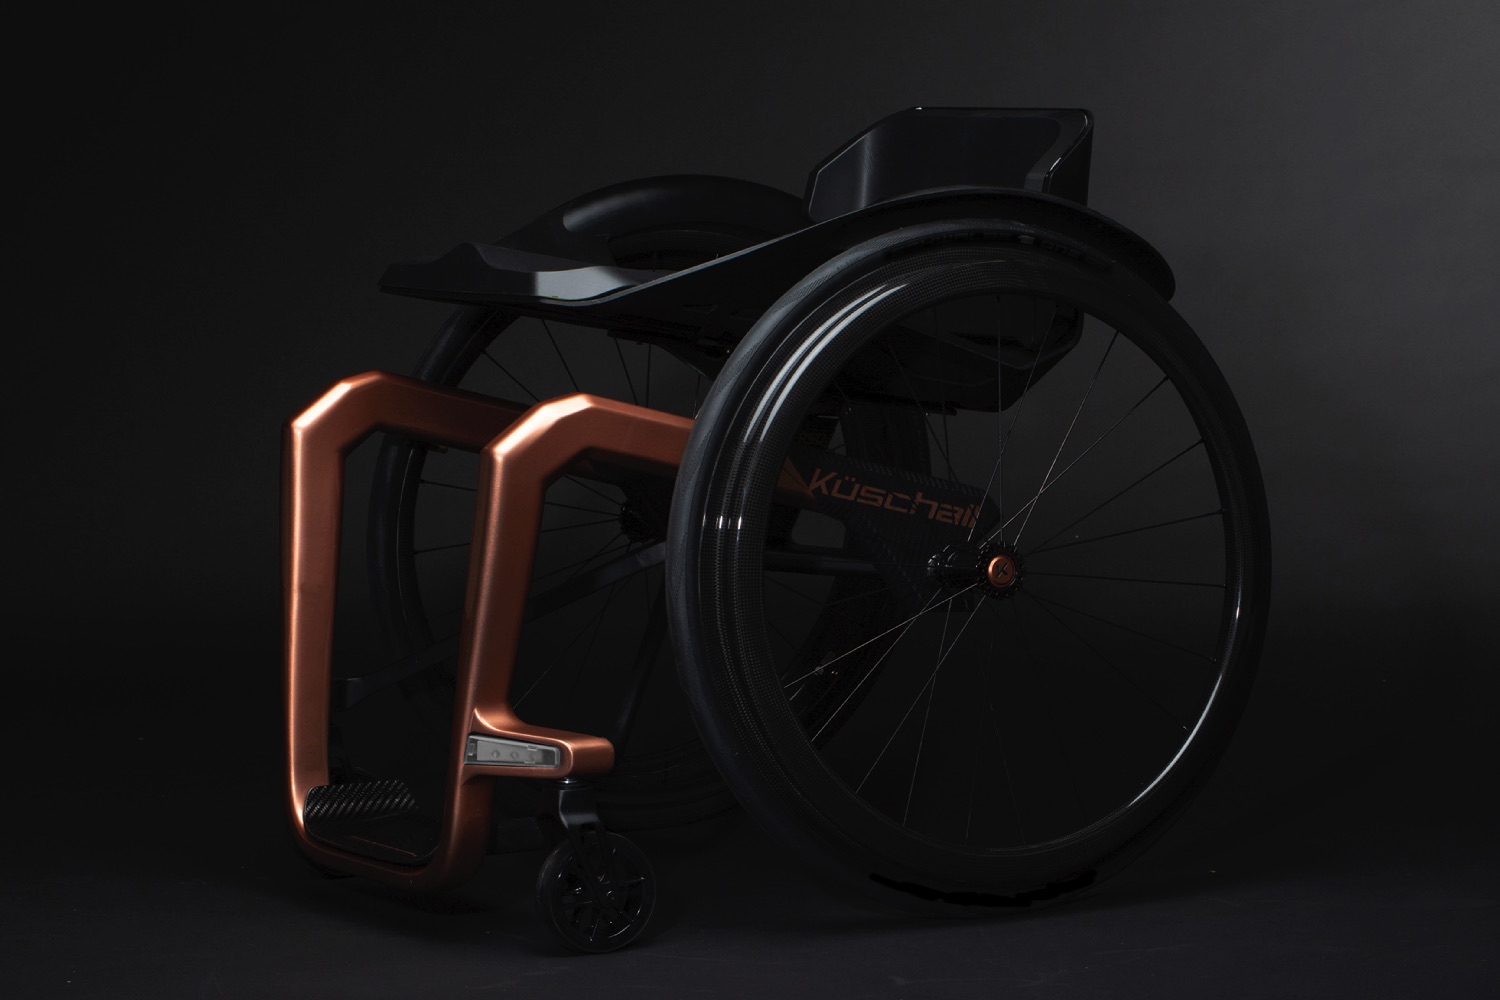 graphene skinned wheelchair superstar 6